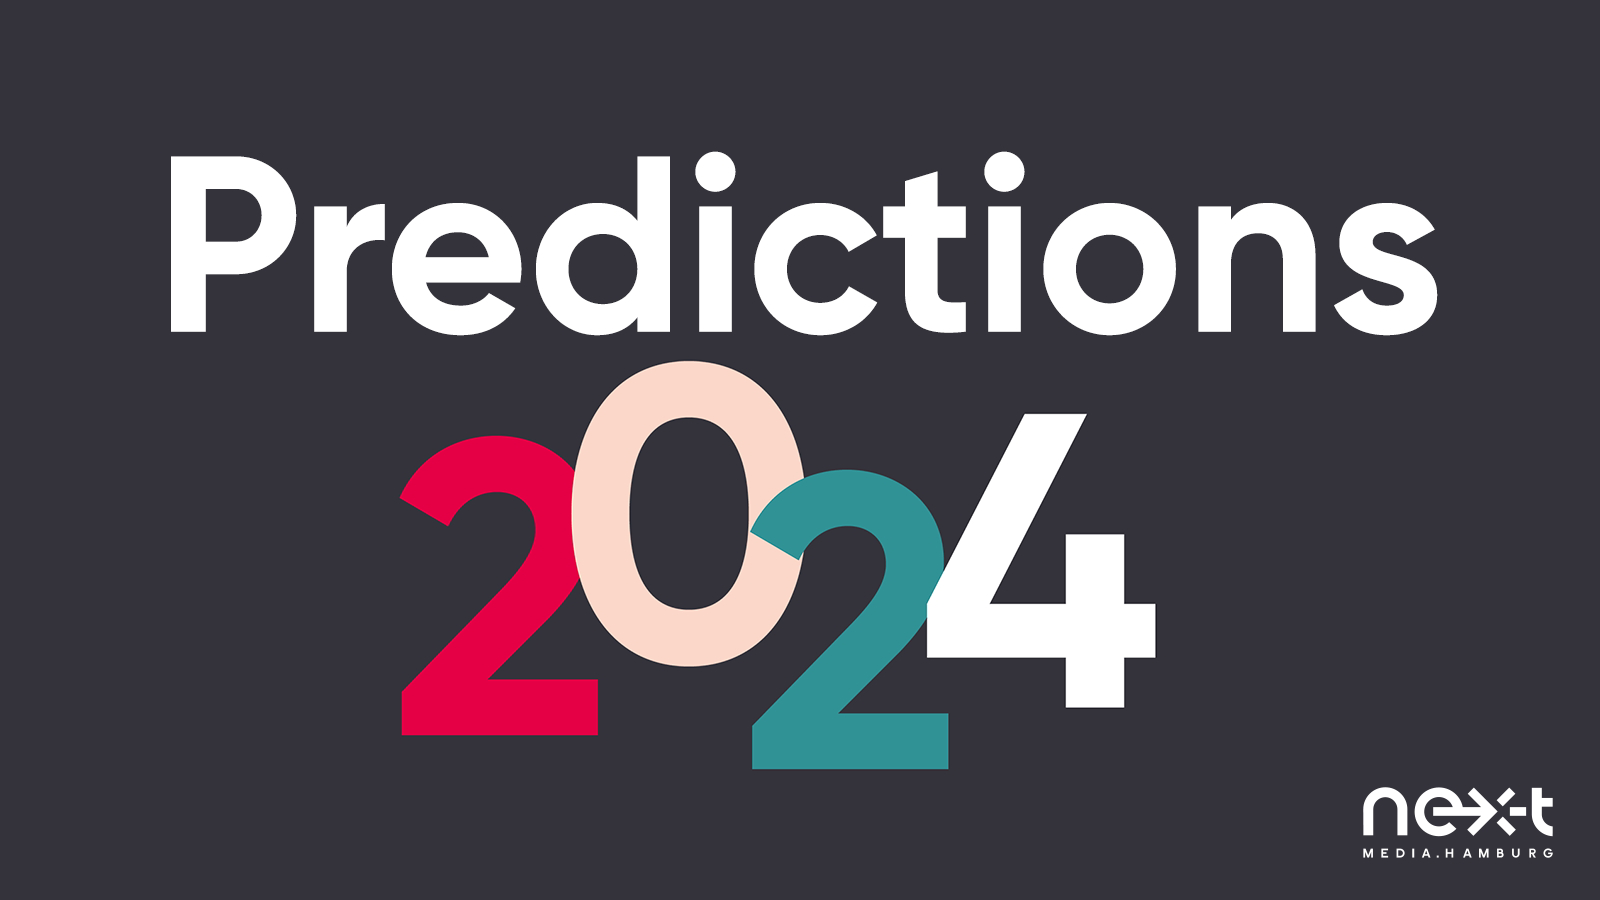 Predictions 2024 von nextMedia.Hamburg